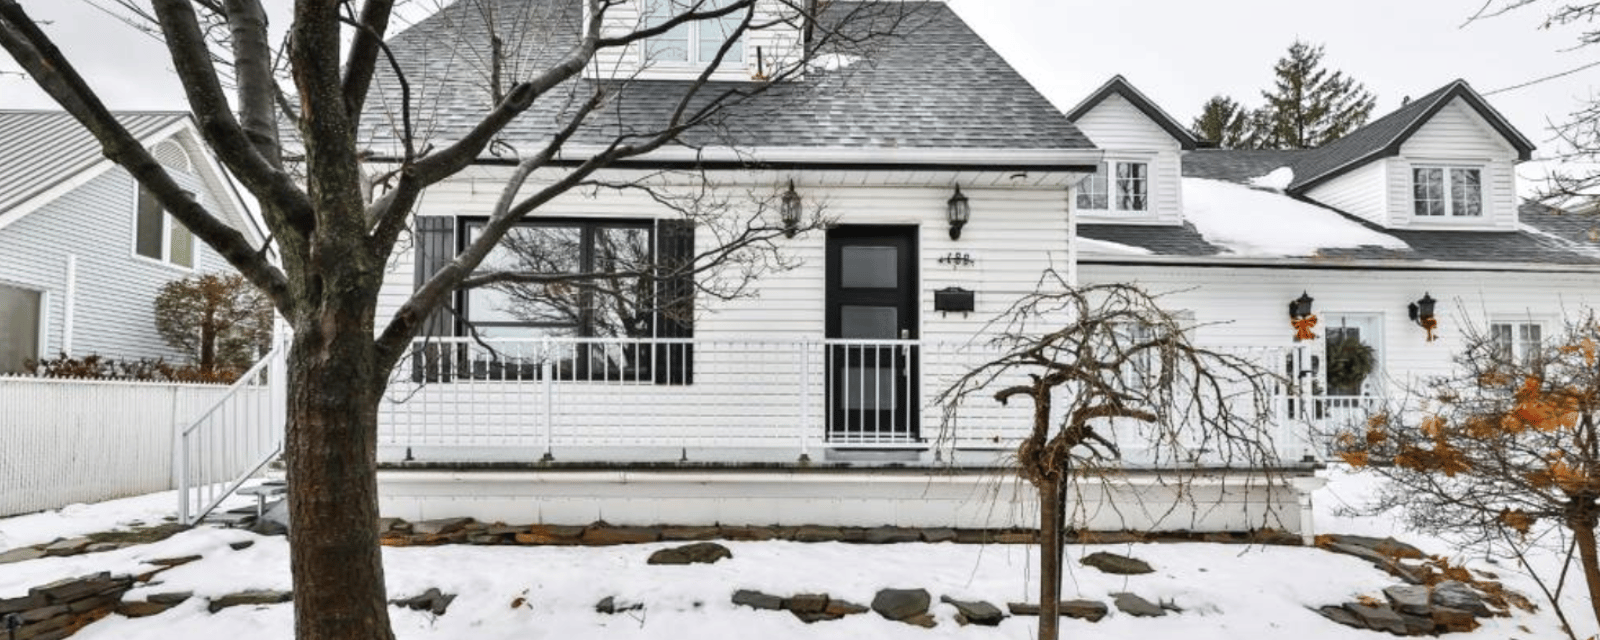 Rare maison unifamiliale montréalaise à vendre à prix raisonnable